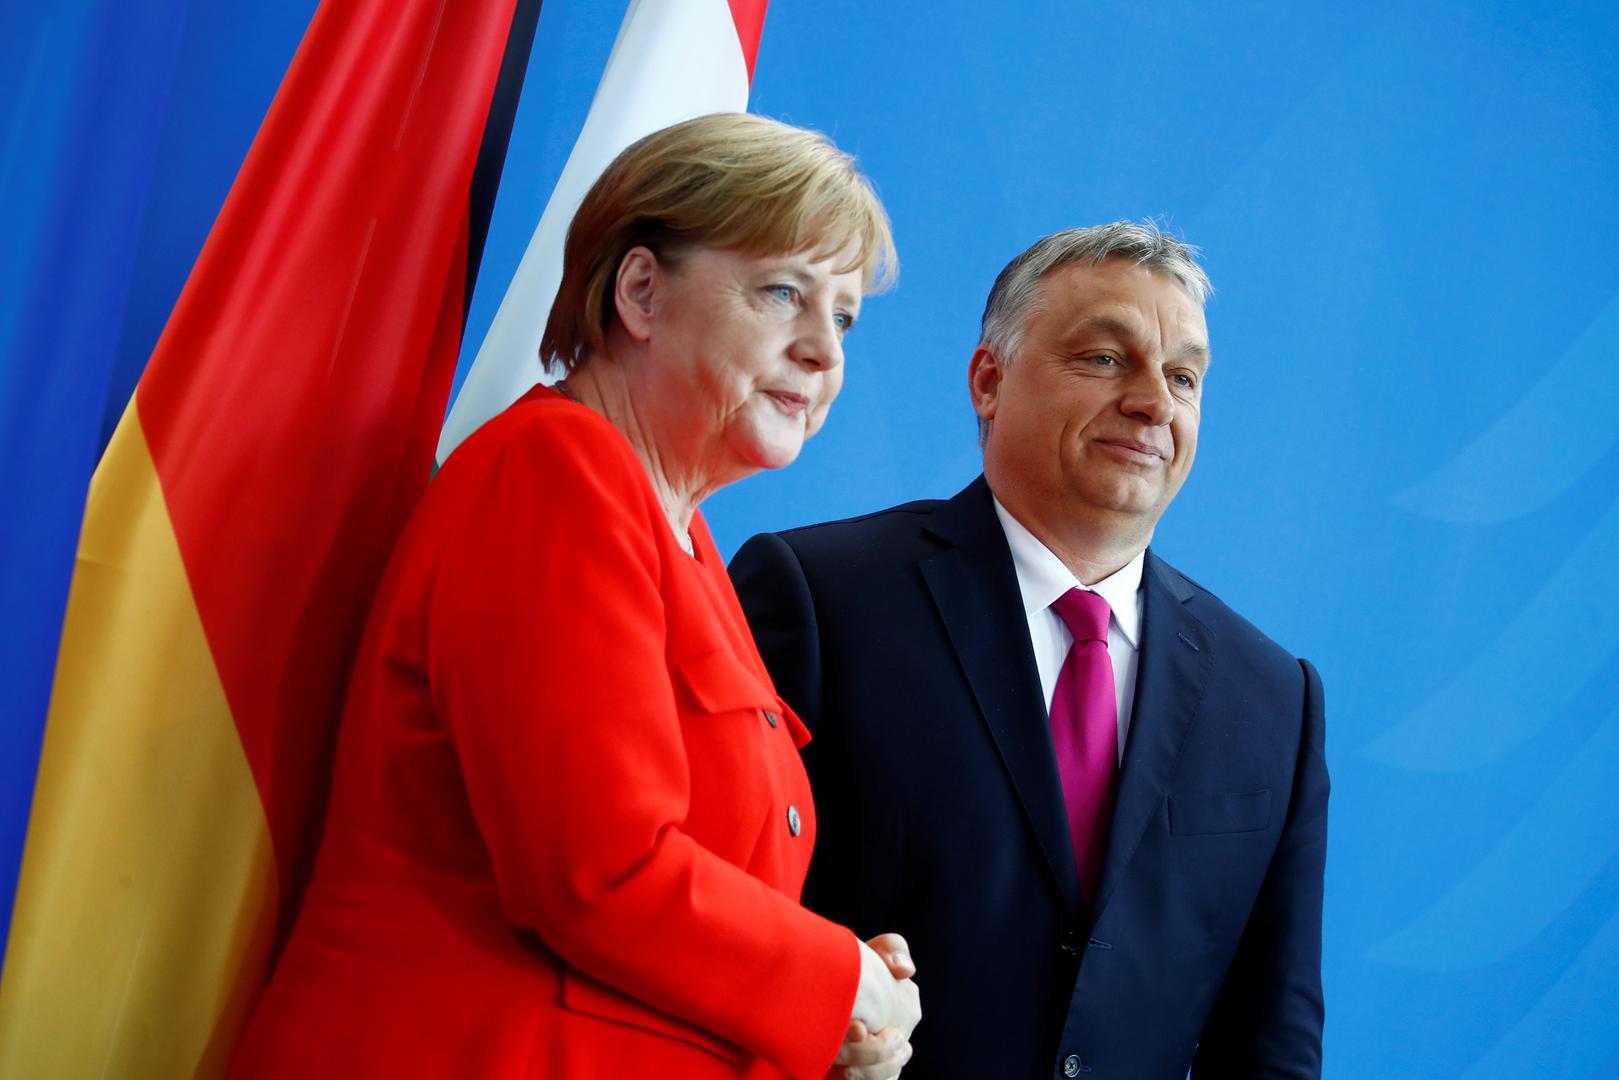 Njemačka kancelarka Angela Merkel je primila mađarskog premijera Viktora Orbana, koji joj se požalio da Mađare “boli kad ih u Njemačkoj prozivaju da nisu solidarni” u migrantskoj krizi